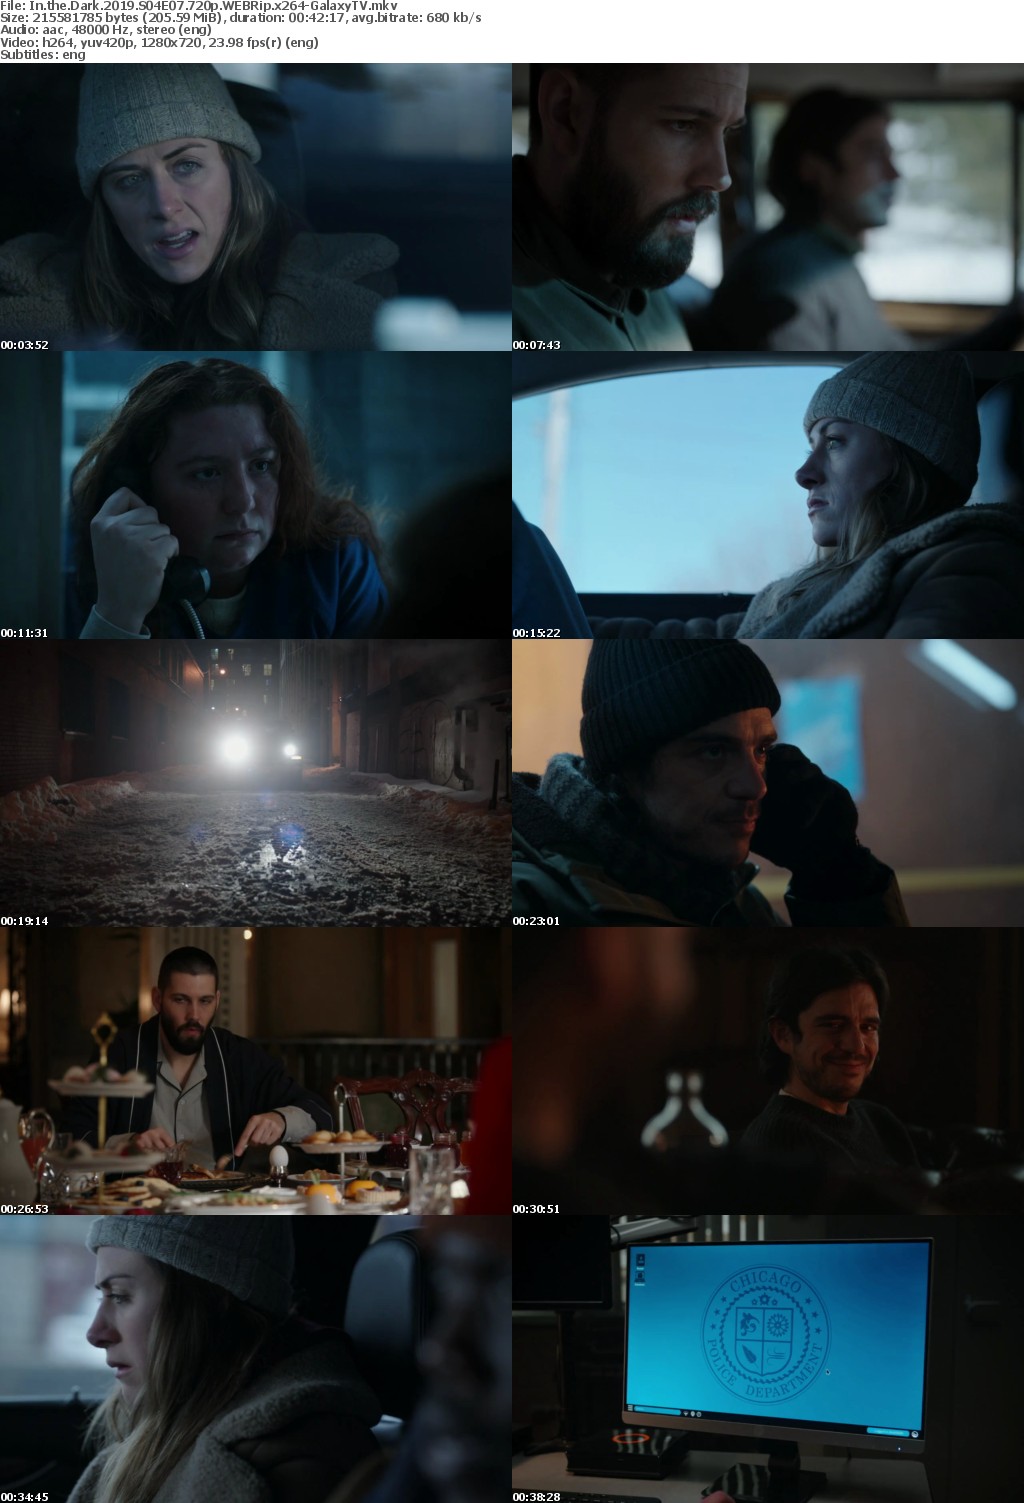 In the Dark 2019 S04 COMPLETE 720p WEBRip x264-GalaxyTV